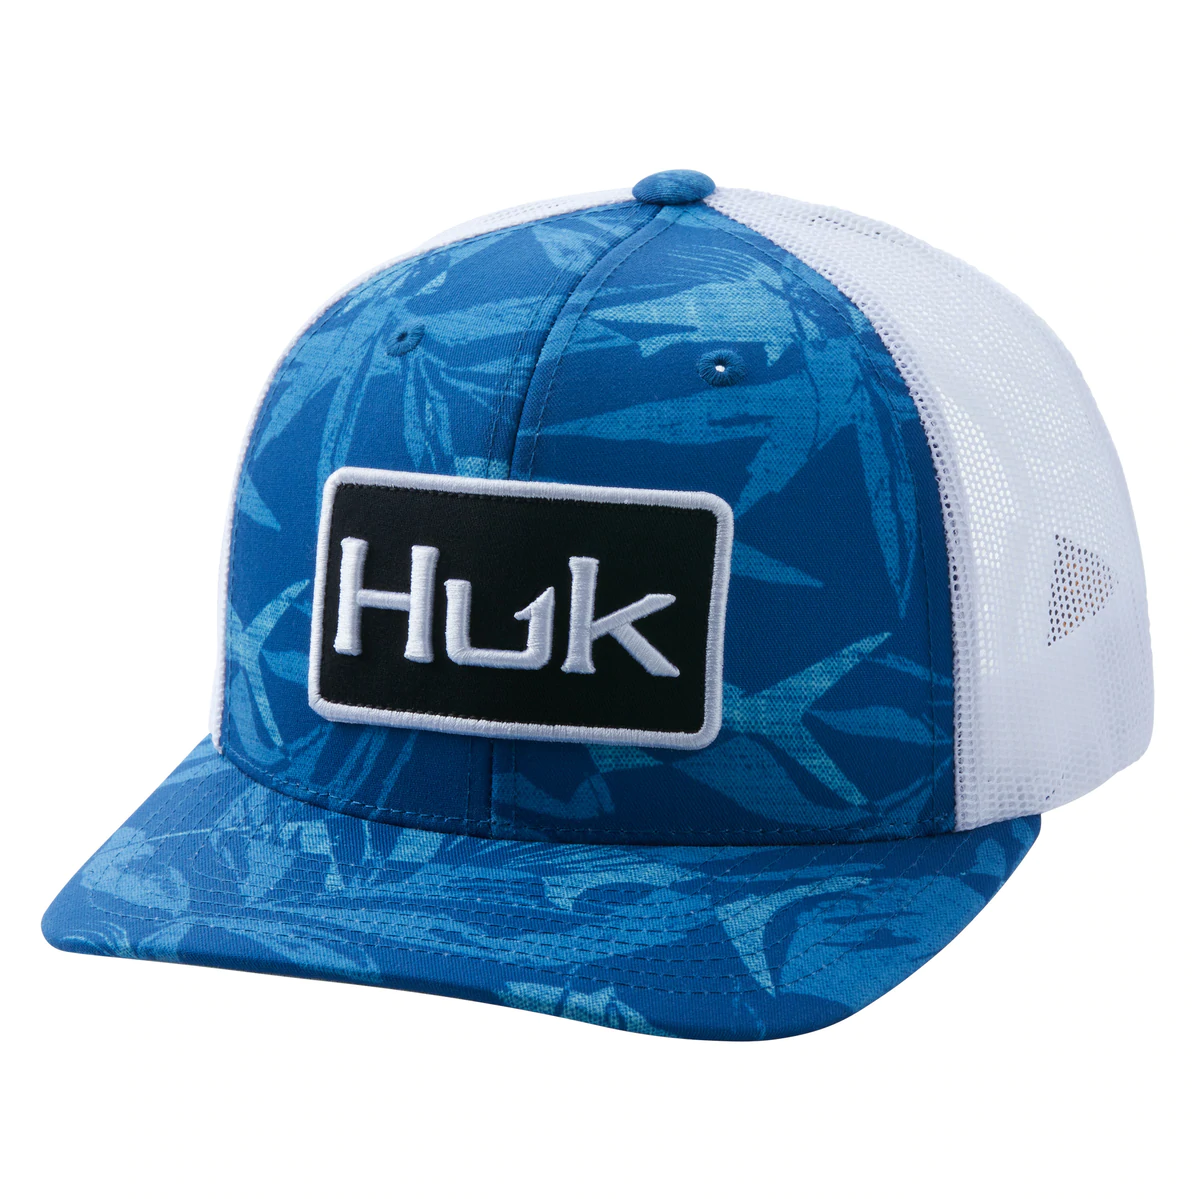 Huk Kids Huk And Bars Trucker